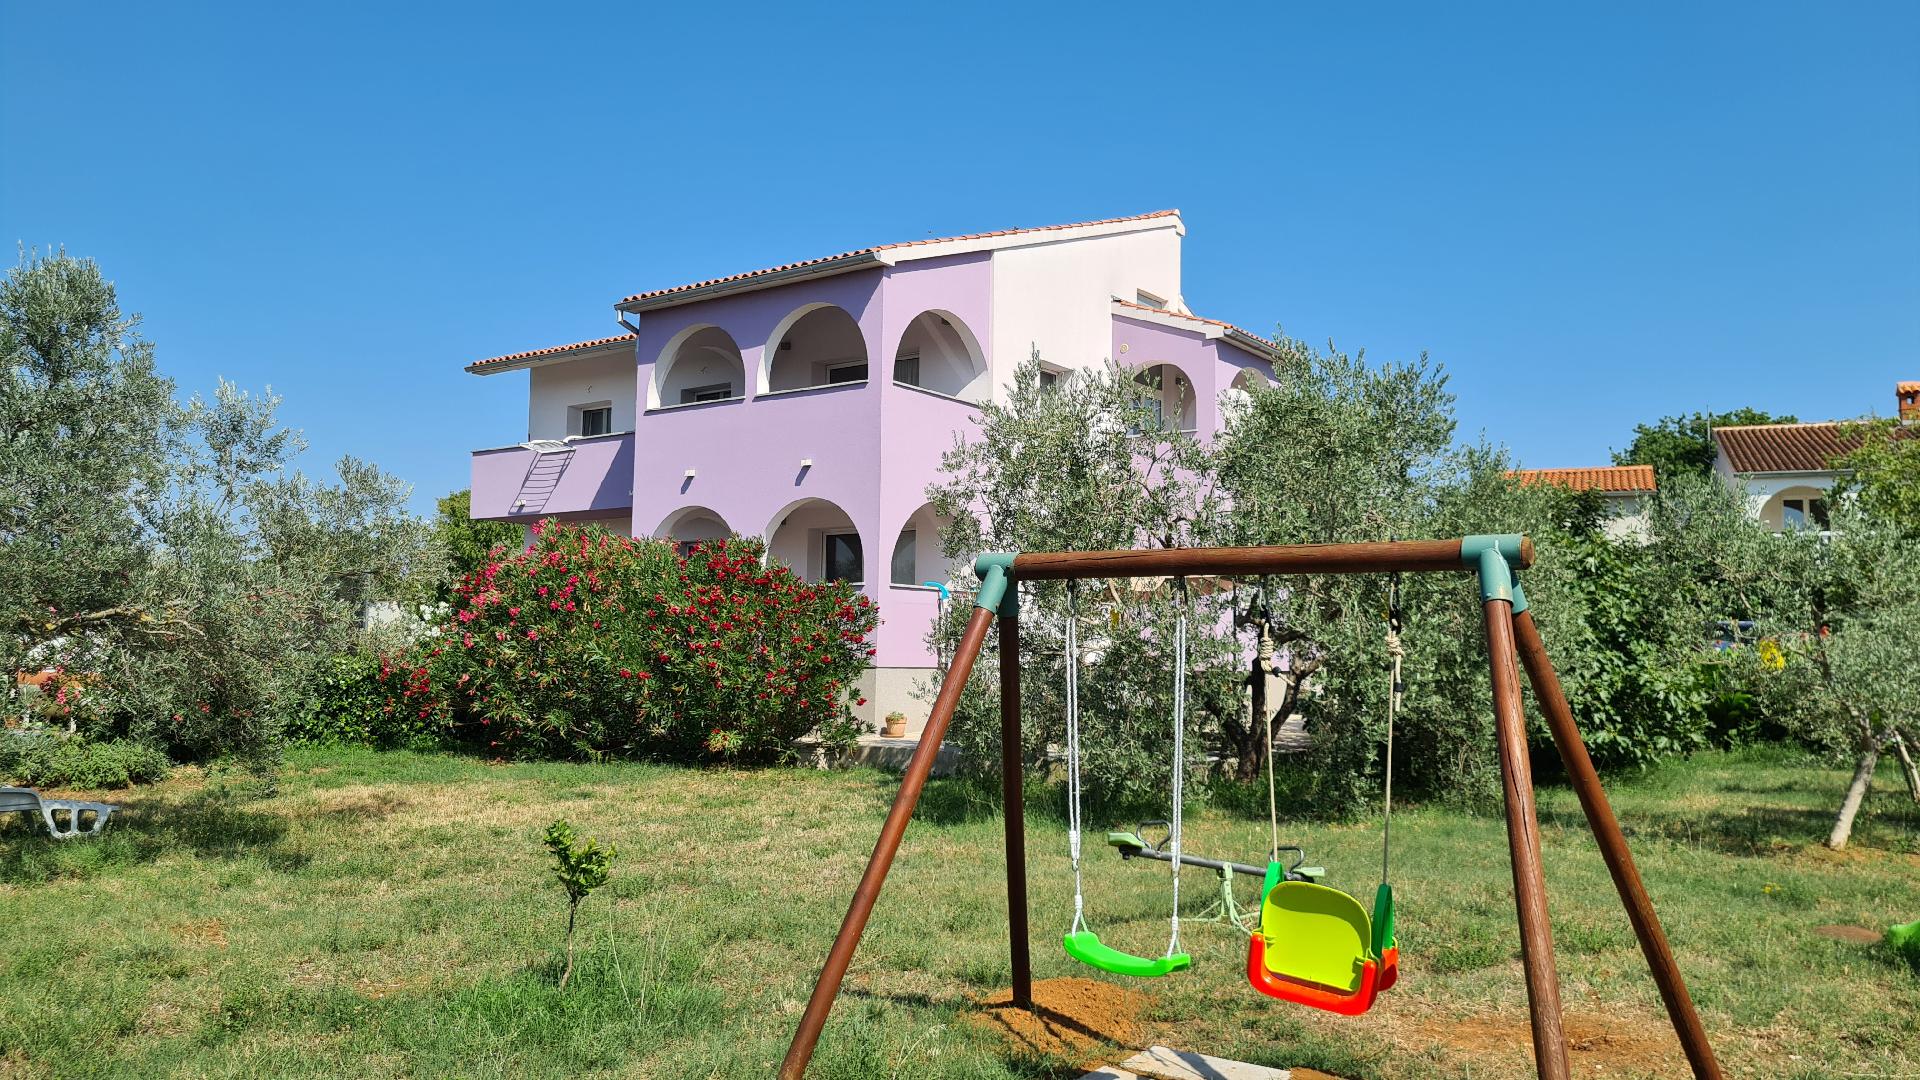 Ferienwohnung für 5 Personen ca. 87 m² i  in Istrien